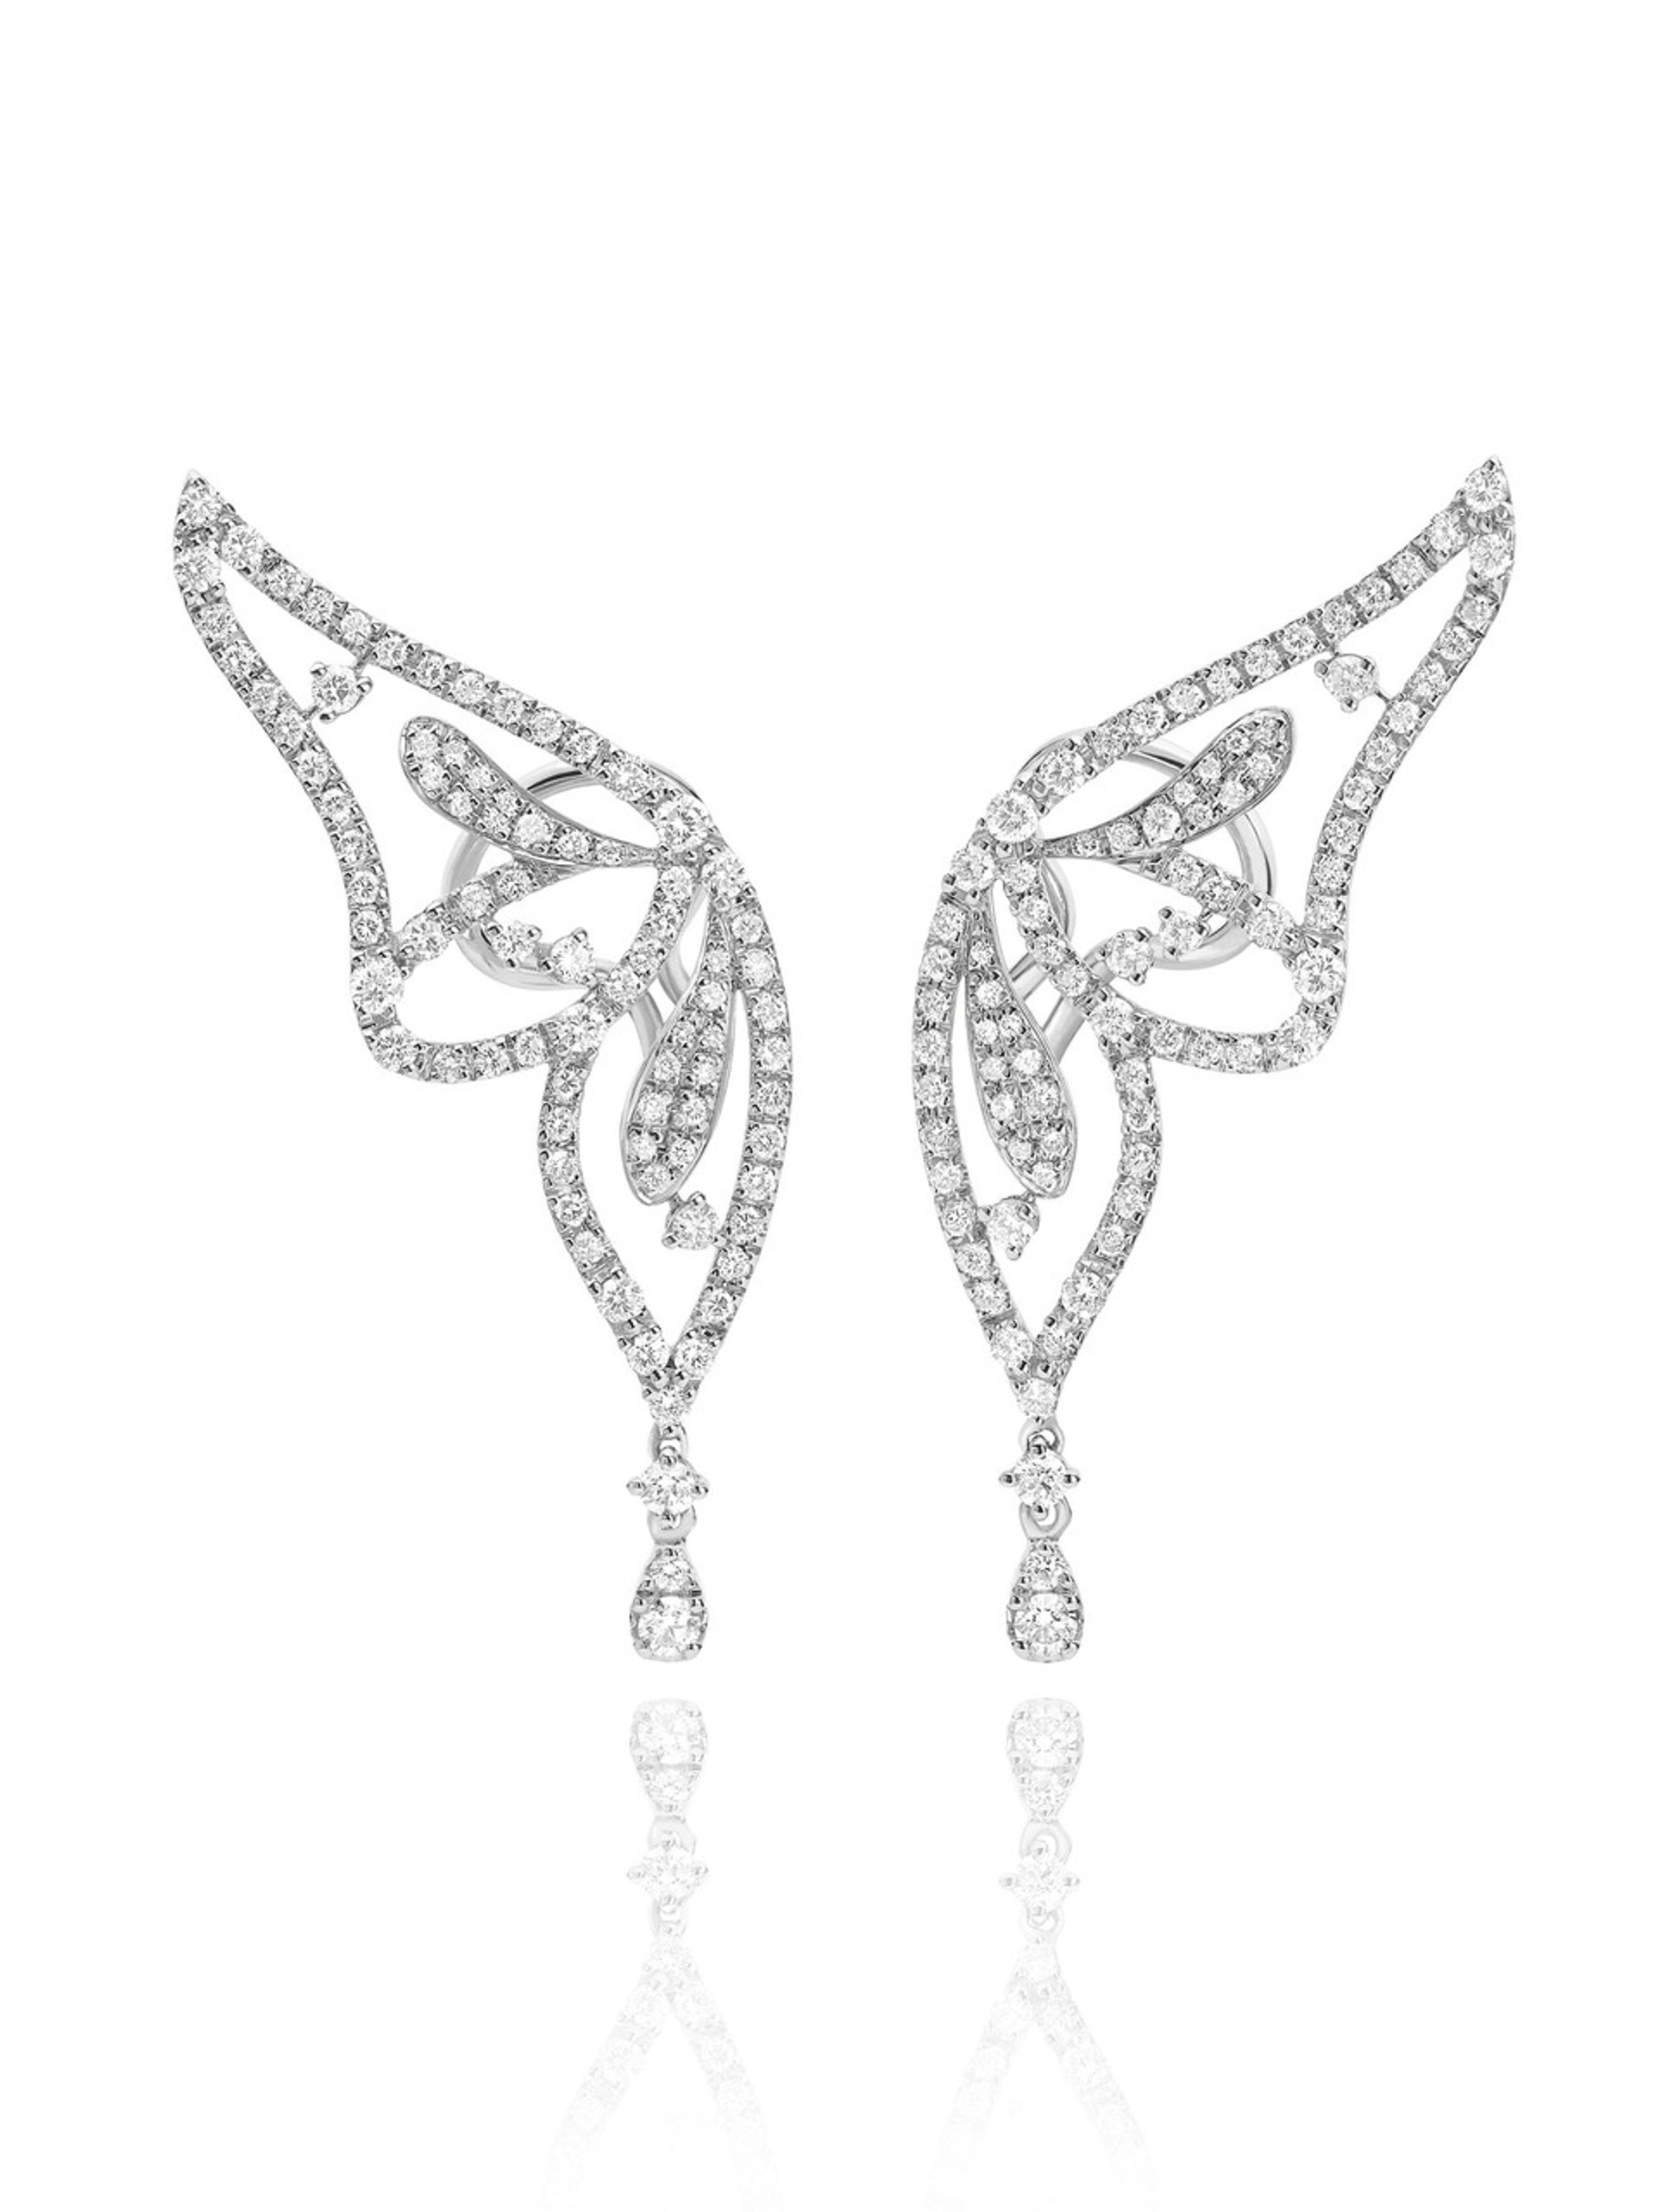 Casato Diamond Butterfly Earrings | Bridal Earrings | Wedding Earrings